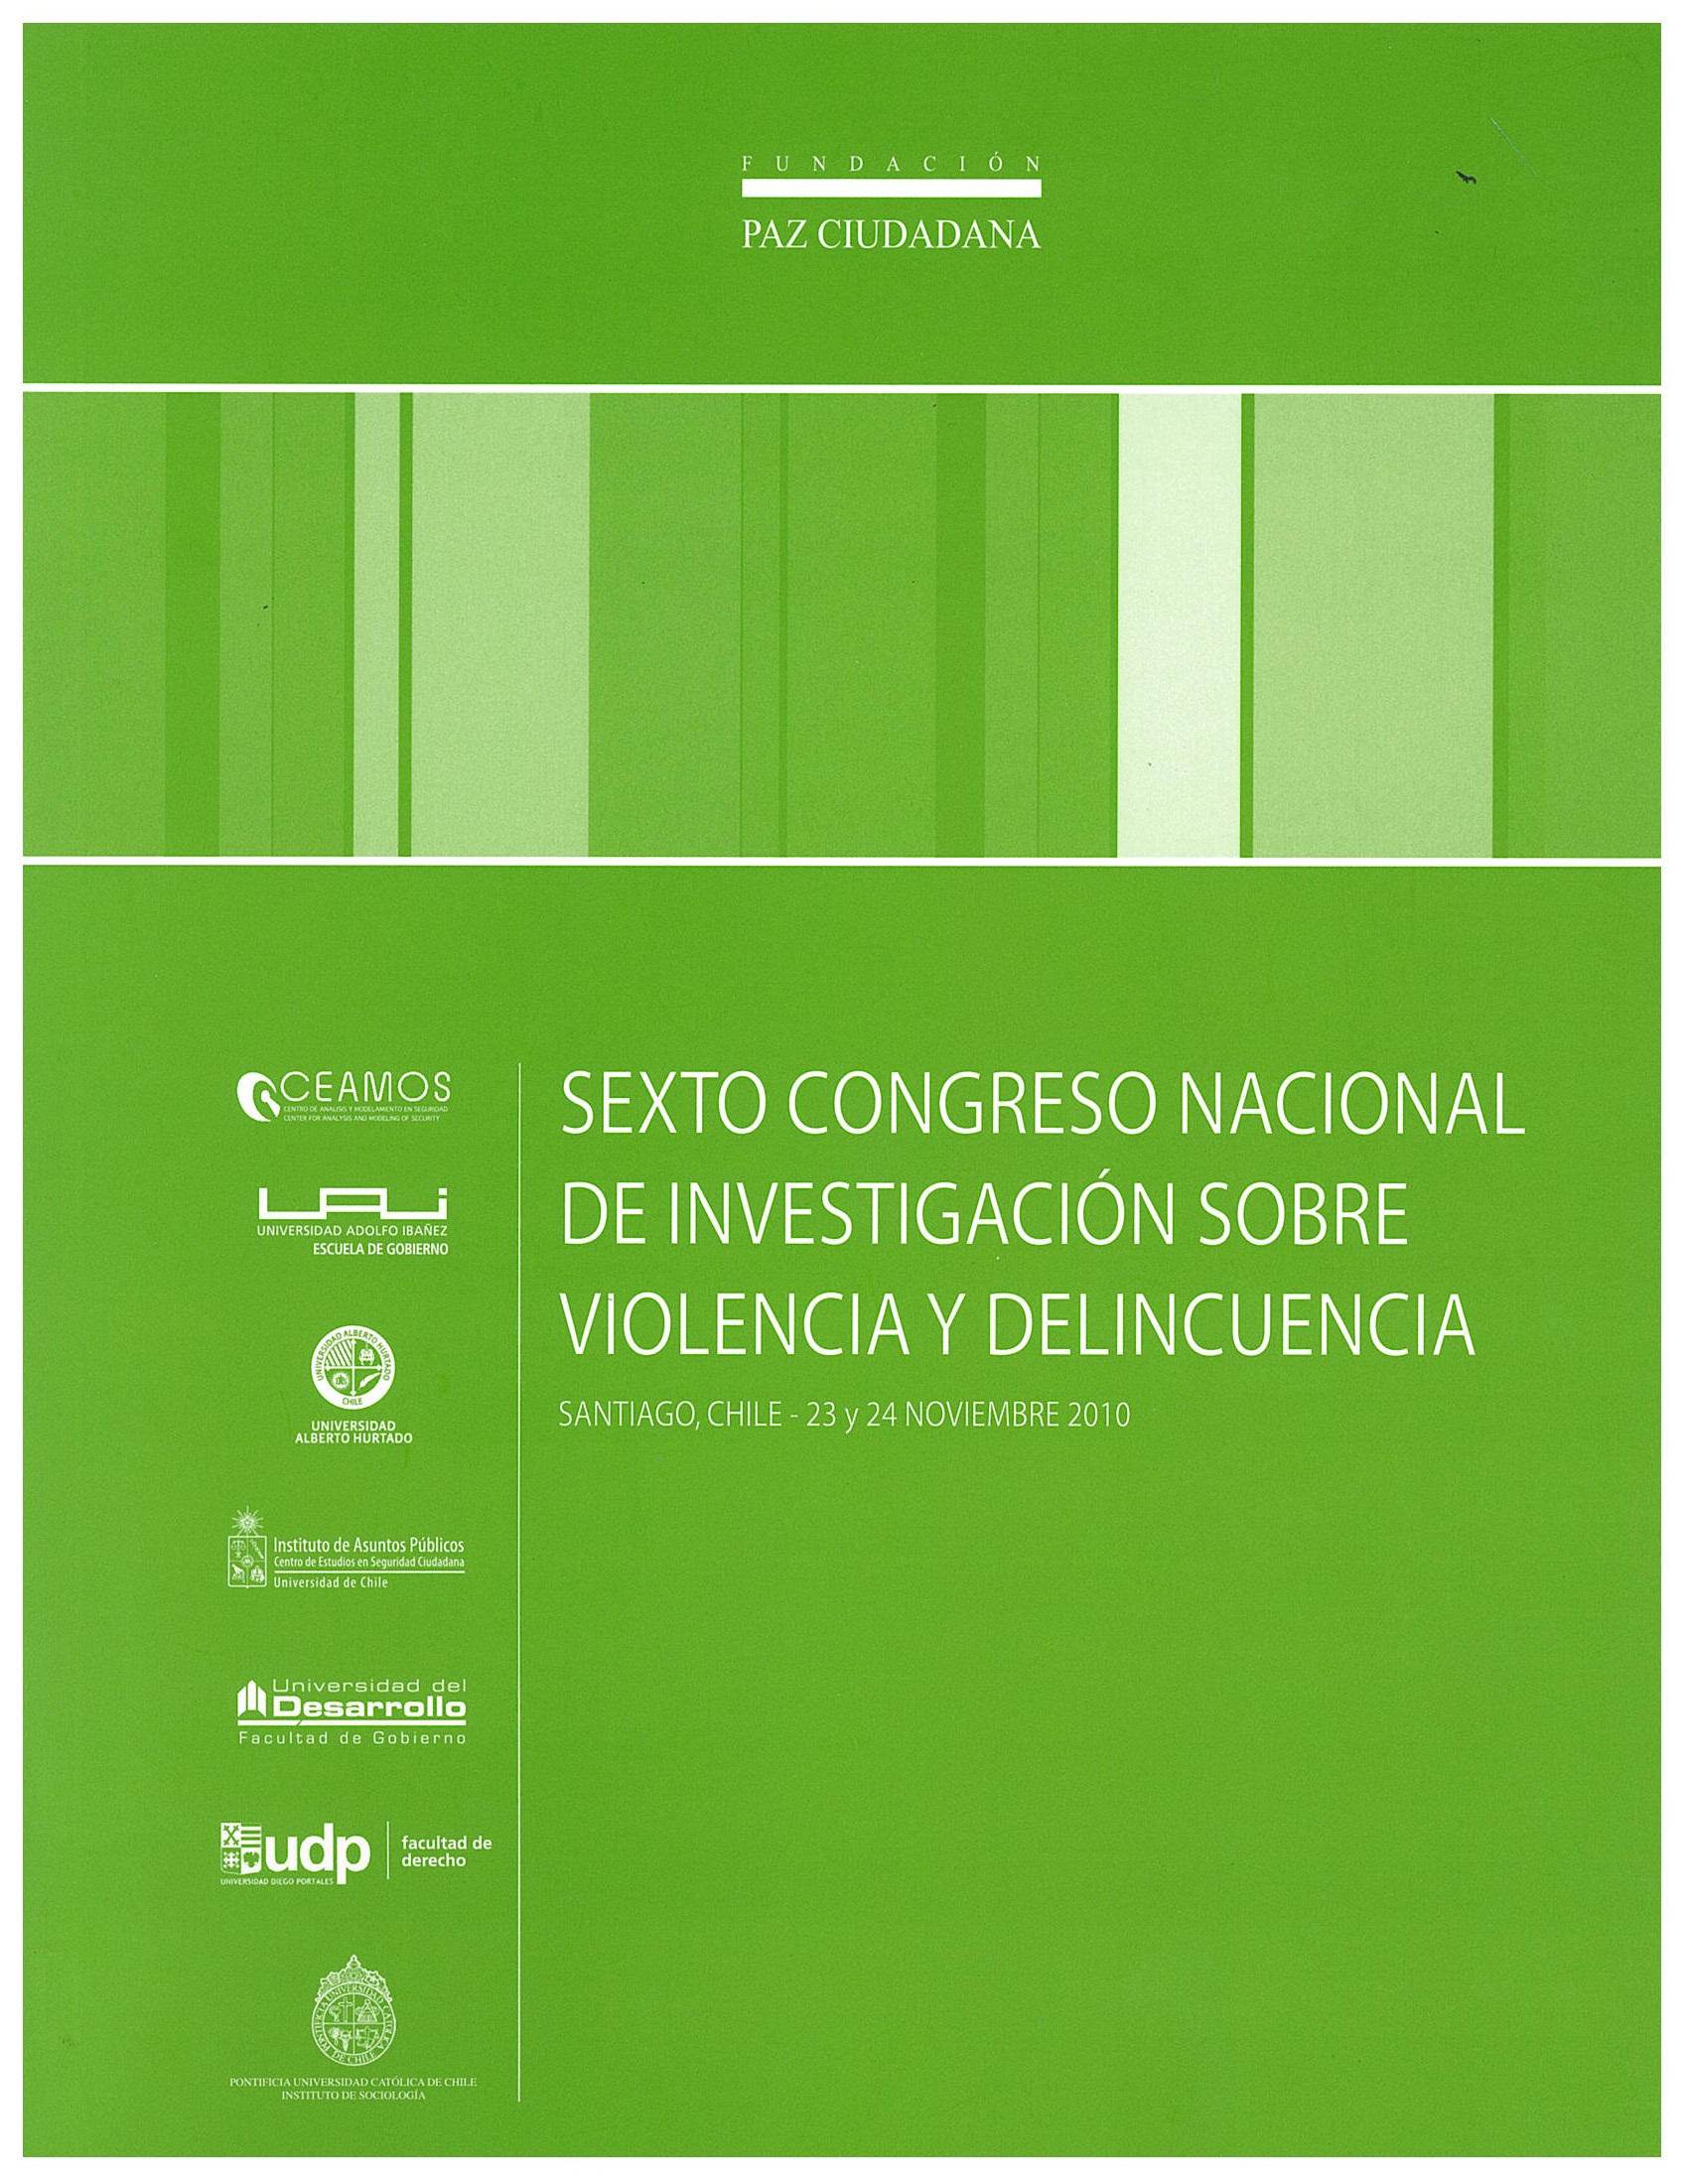 Sexto Congreso Nacional de Investigación sobre Violencia y Delincuencia